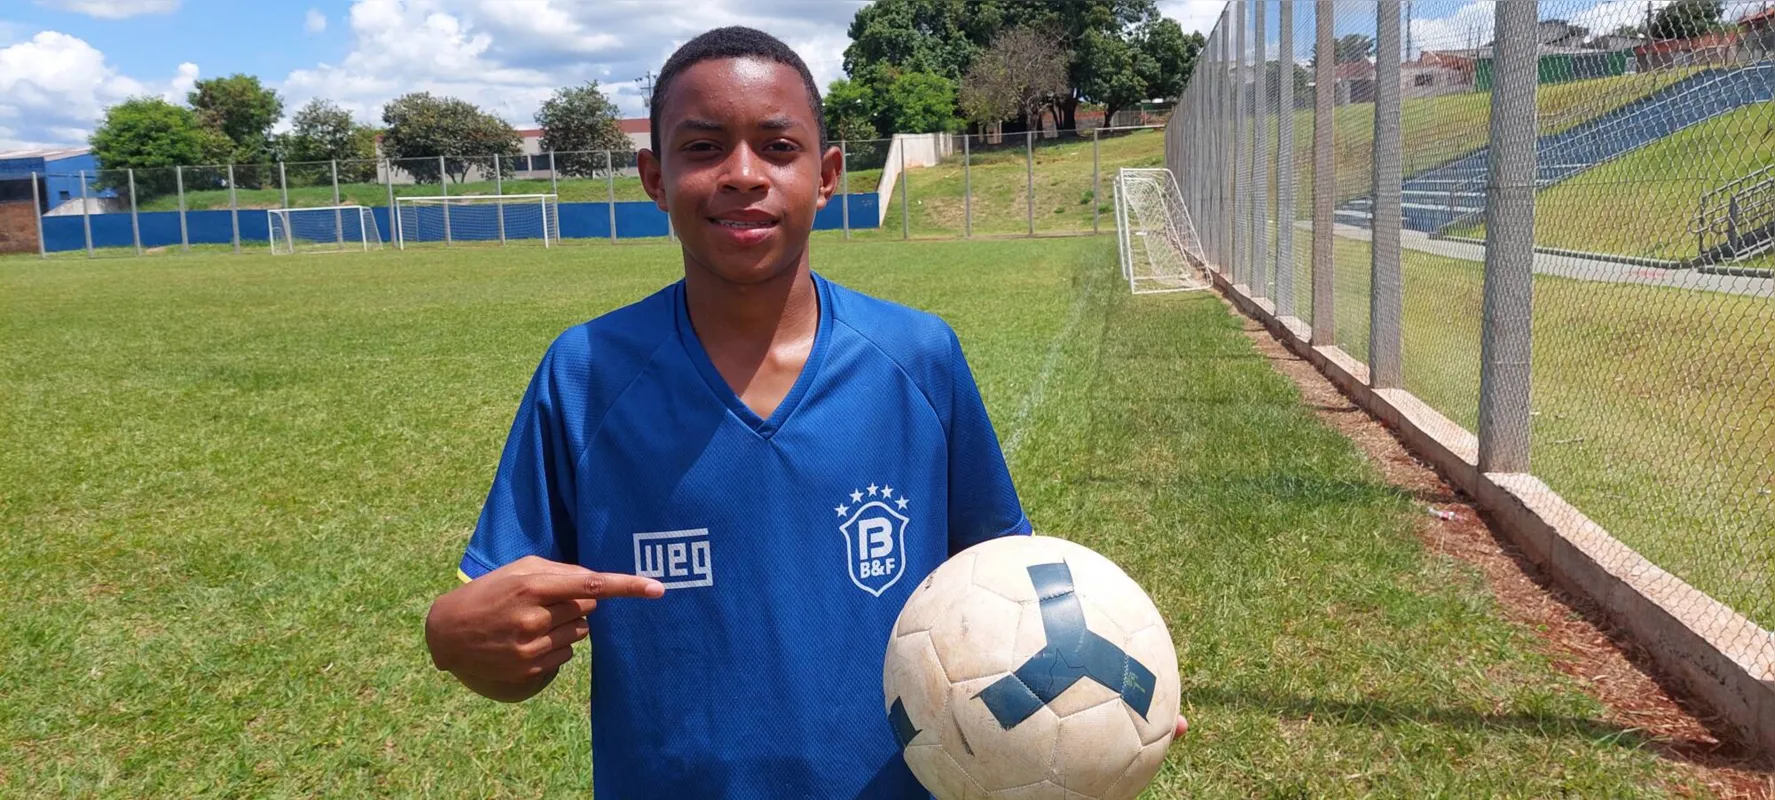 Igor Trindade de Souza começou a treinar há três anos: "Vou seguir o meu foco, que é ser jogador de futebol"